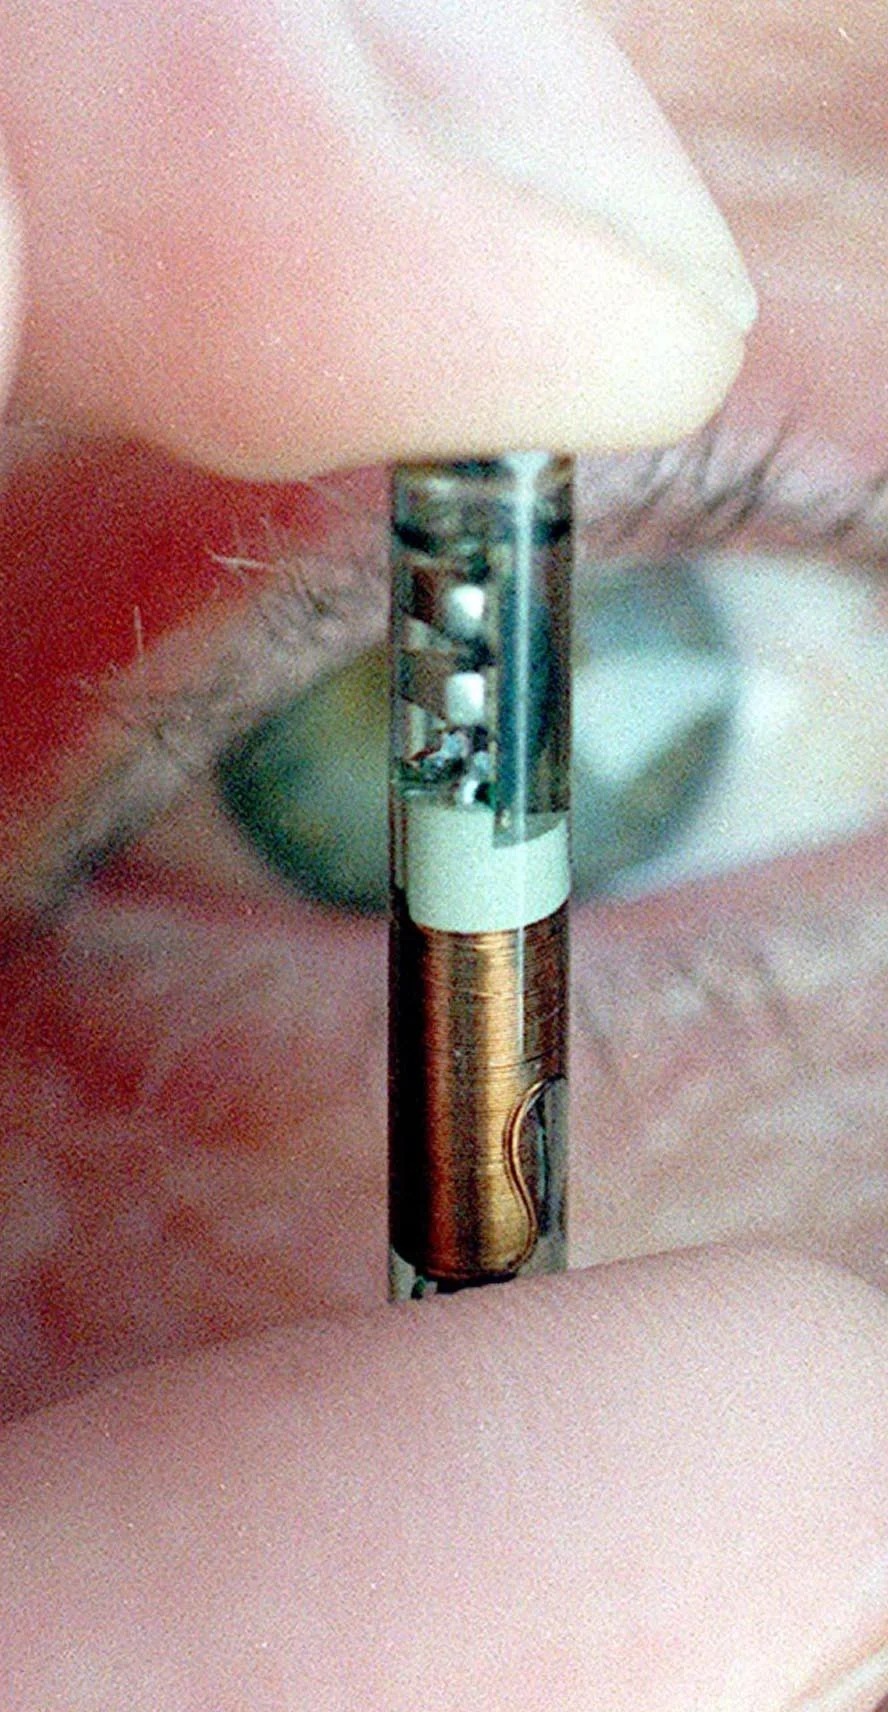 Der ursprünglich implantierte Chip bestand aus Glas und hätte zerbrechen können, wenn er zerbrochen wäre